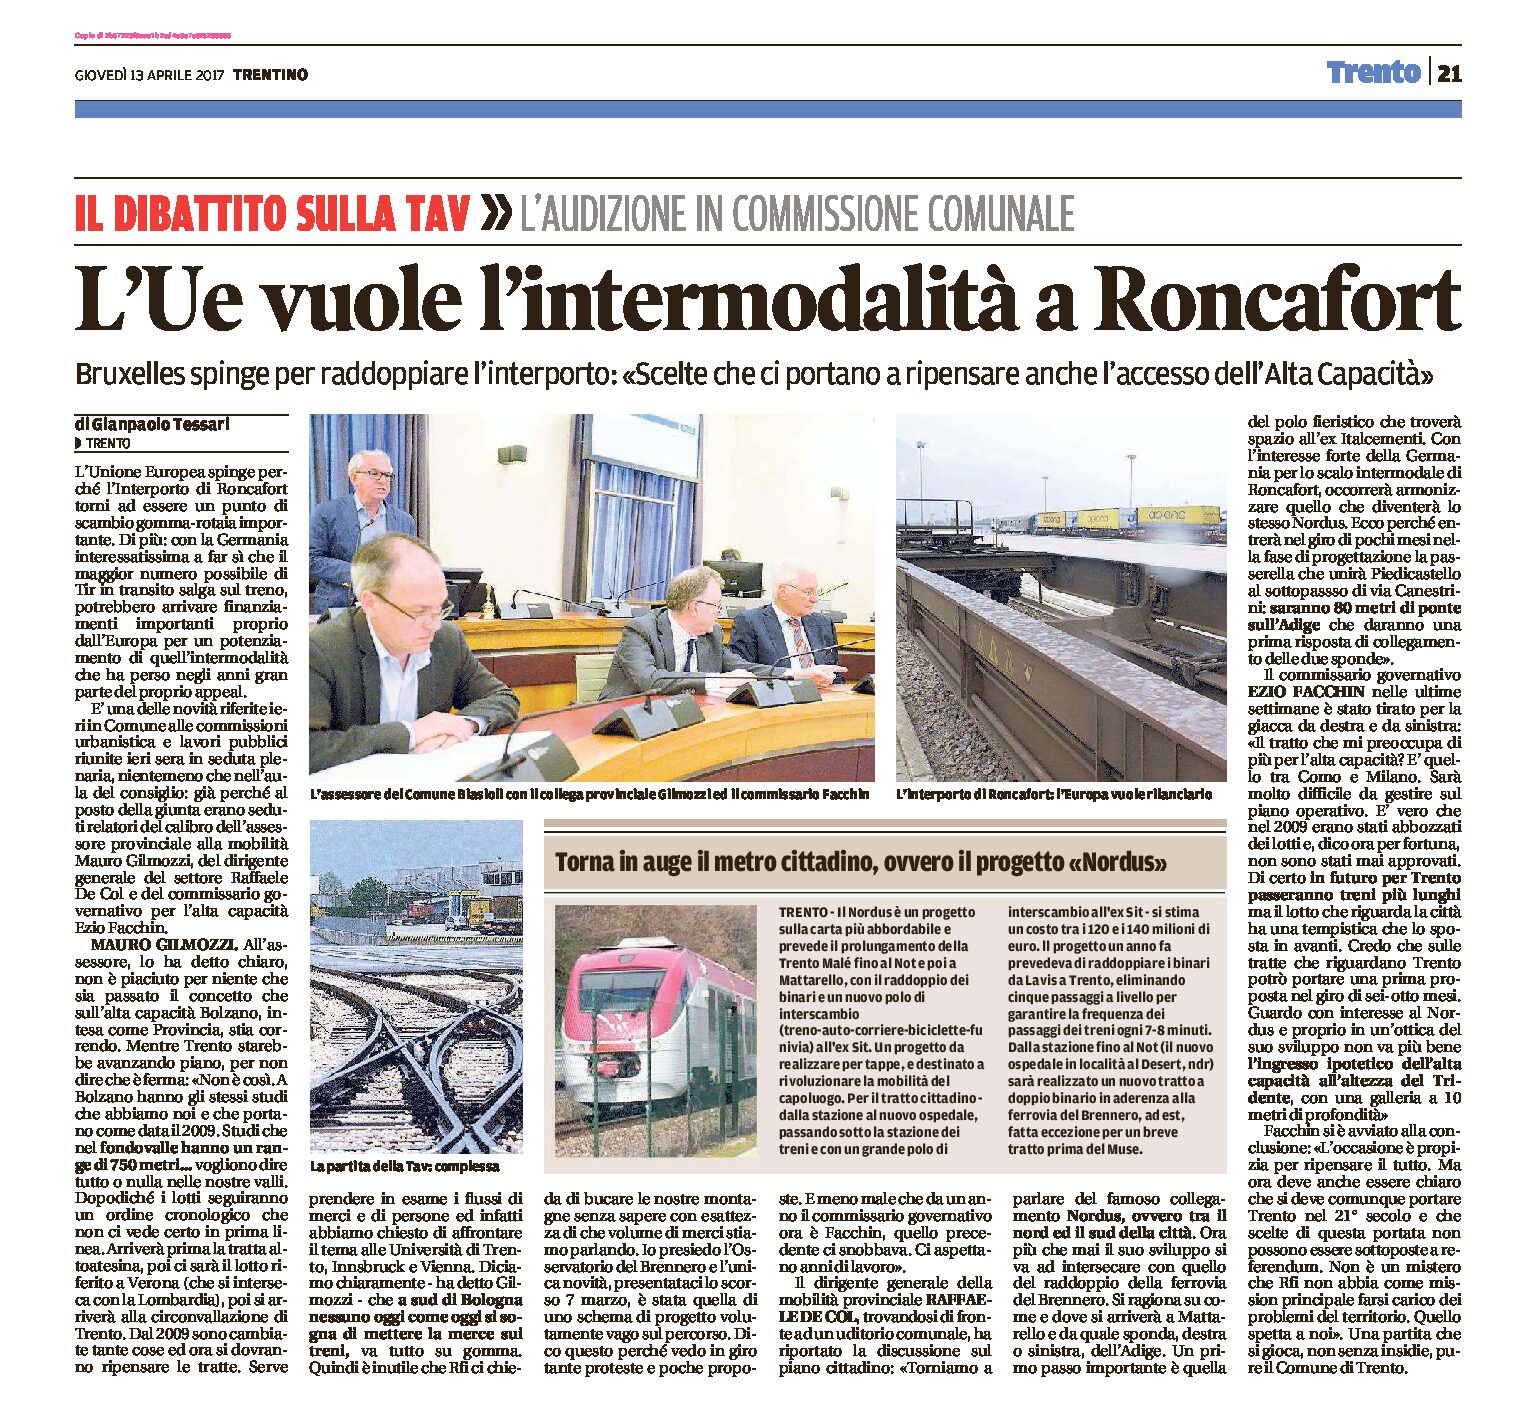 L’Unione Europea vuole l’intermodalità a Roncafort e il raddoppio dell’Interporto